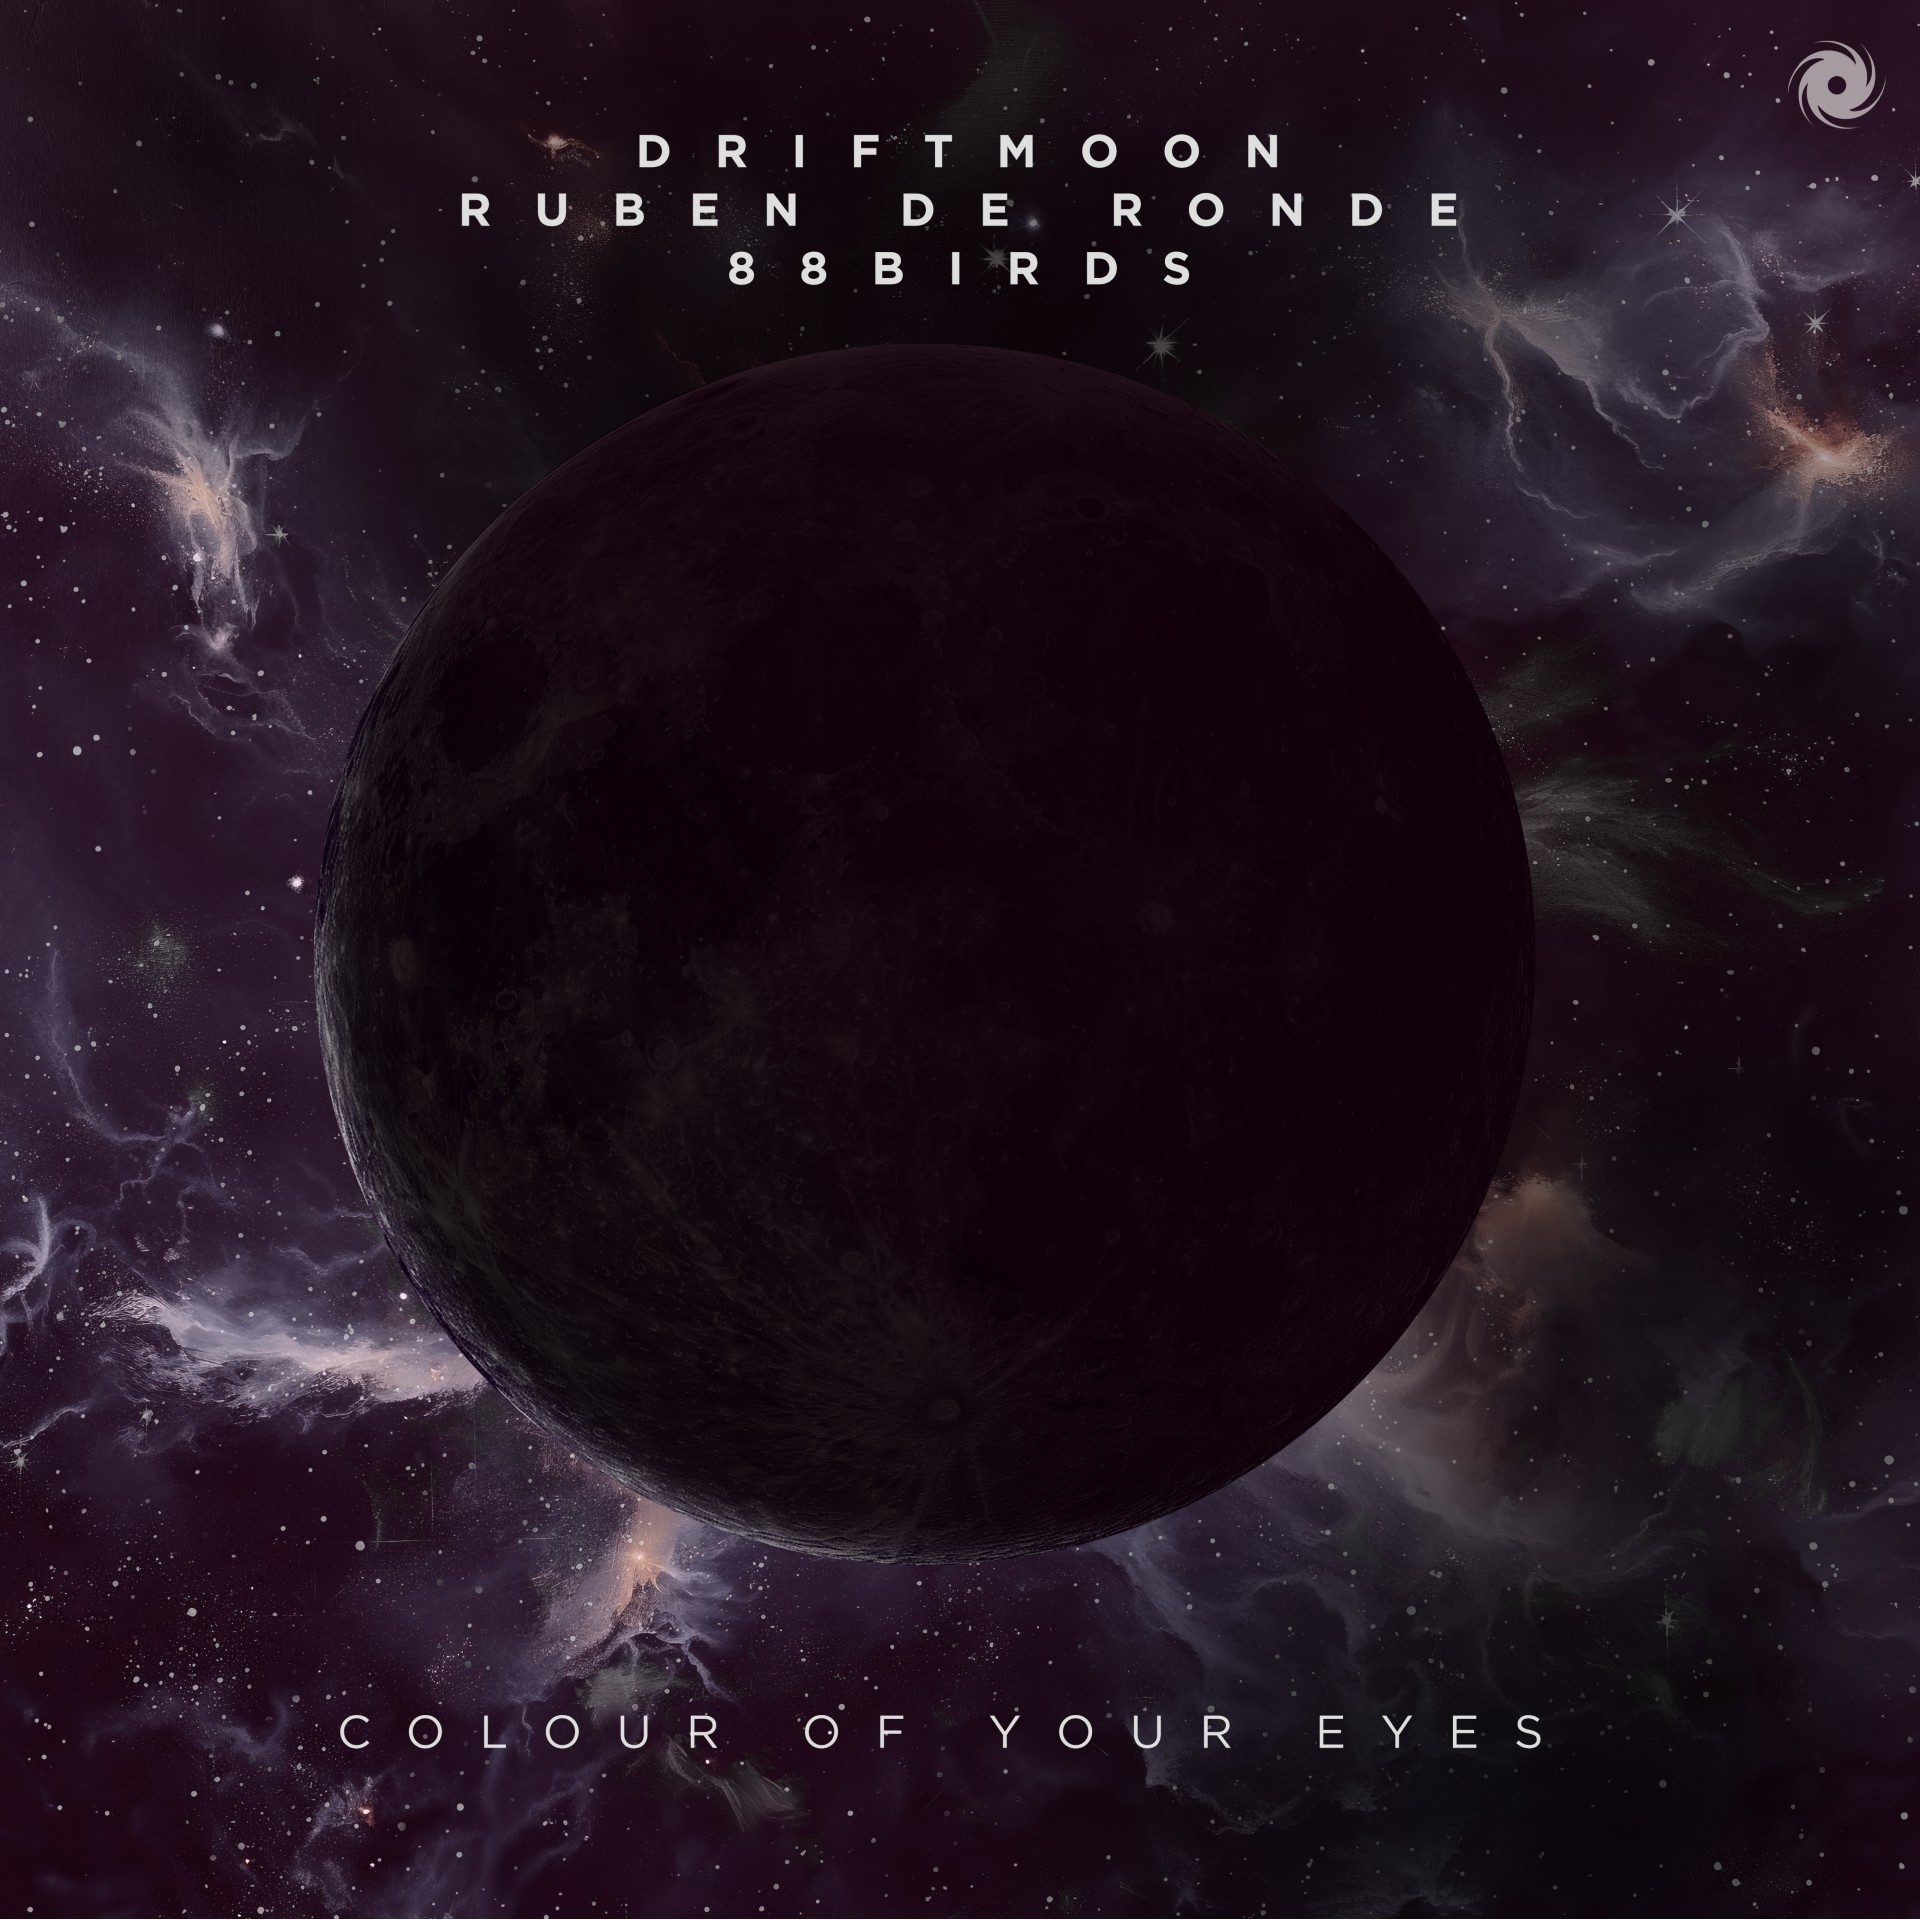 Driftmoon x Ruben de Ronde x 88Birds presents Colour Of Your Eyes on Black Hole Recordings